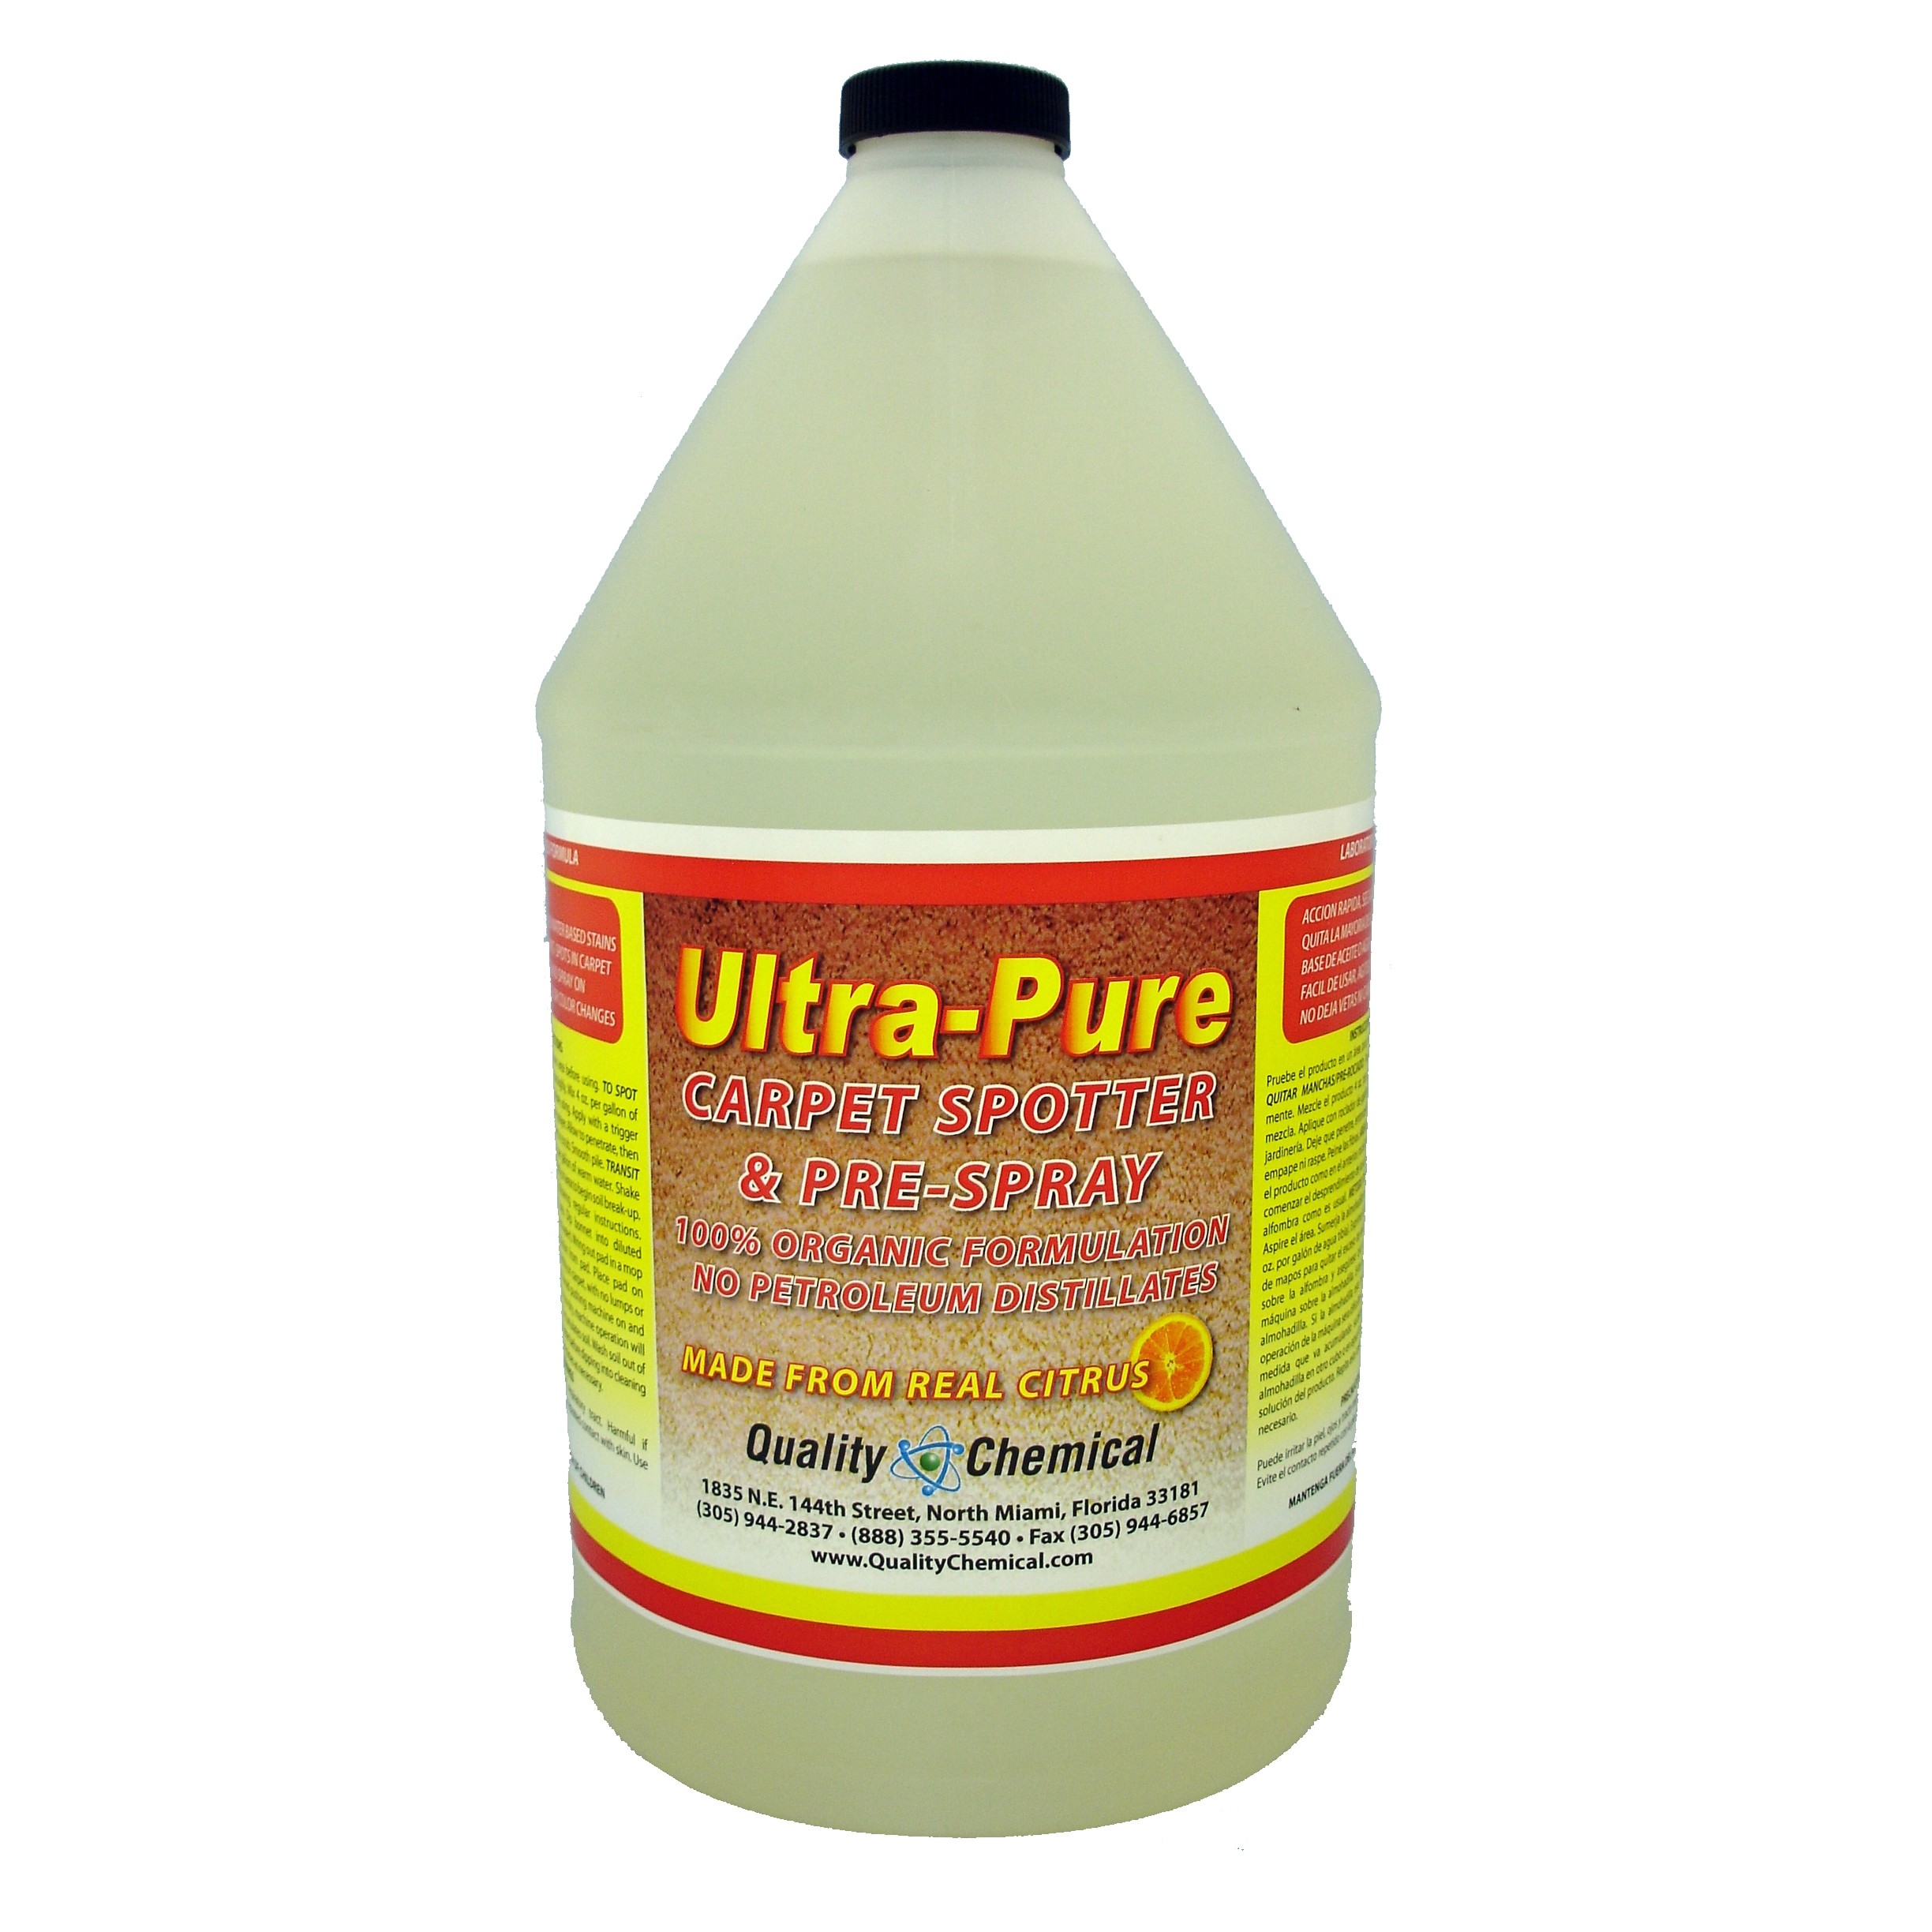 Ultra-Pure Carpet Spotter & Pre-Spray